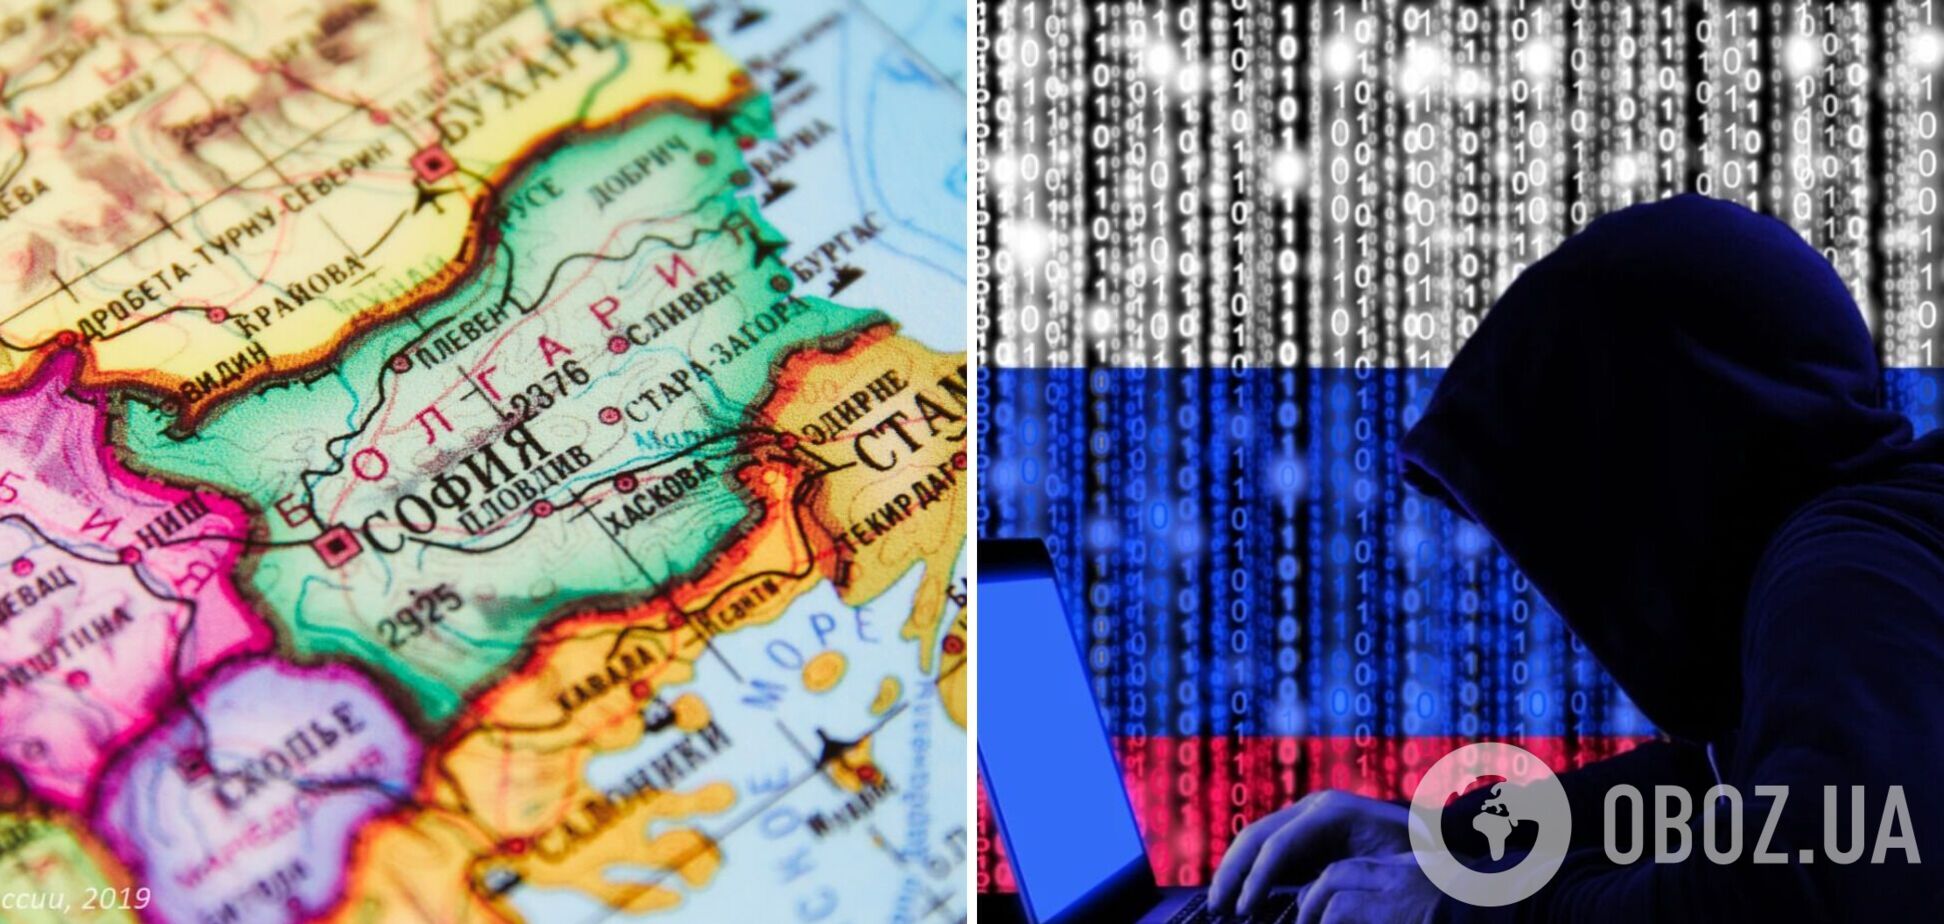 Российские хакеры атаковали сайты президента Болгарии и ряда государственных учреждений